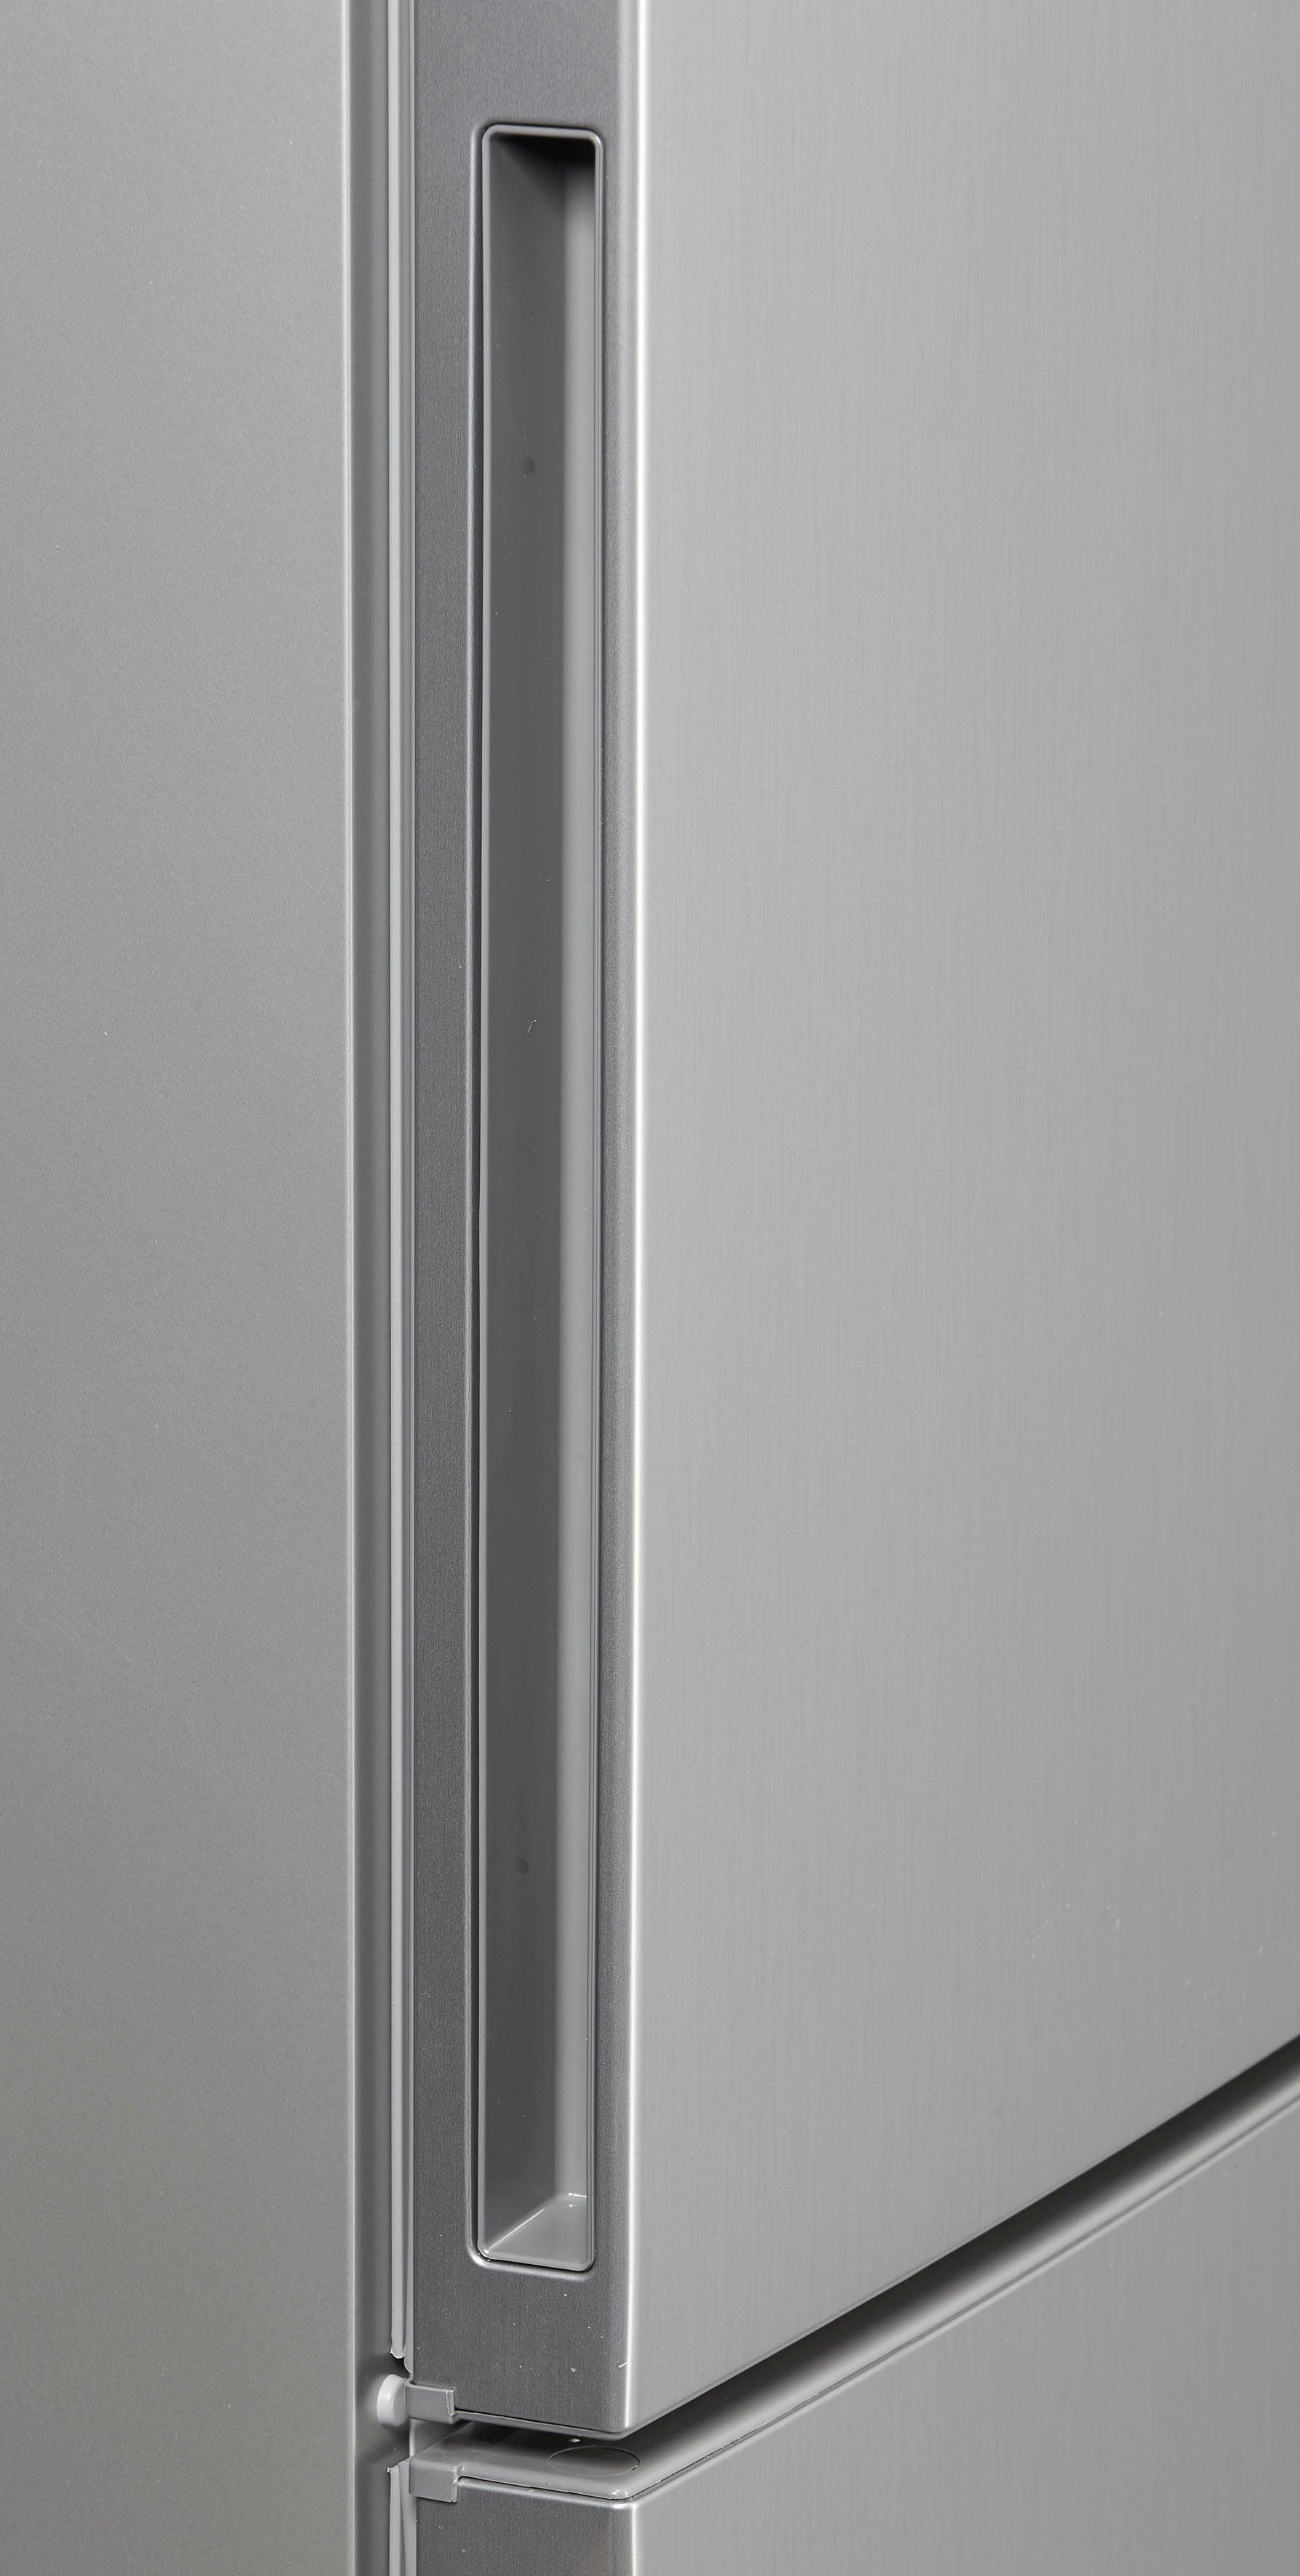 BOSCH Kühl-/Gefrierkombination KGE36AICA, 186 cm hoch, Edelstahl Anti-Fingerprint mit breit 60 cm